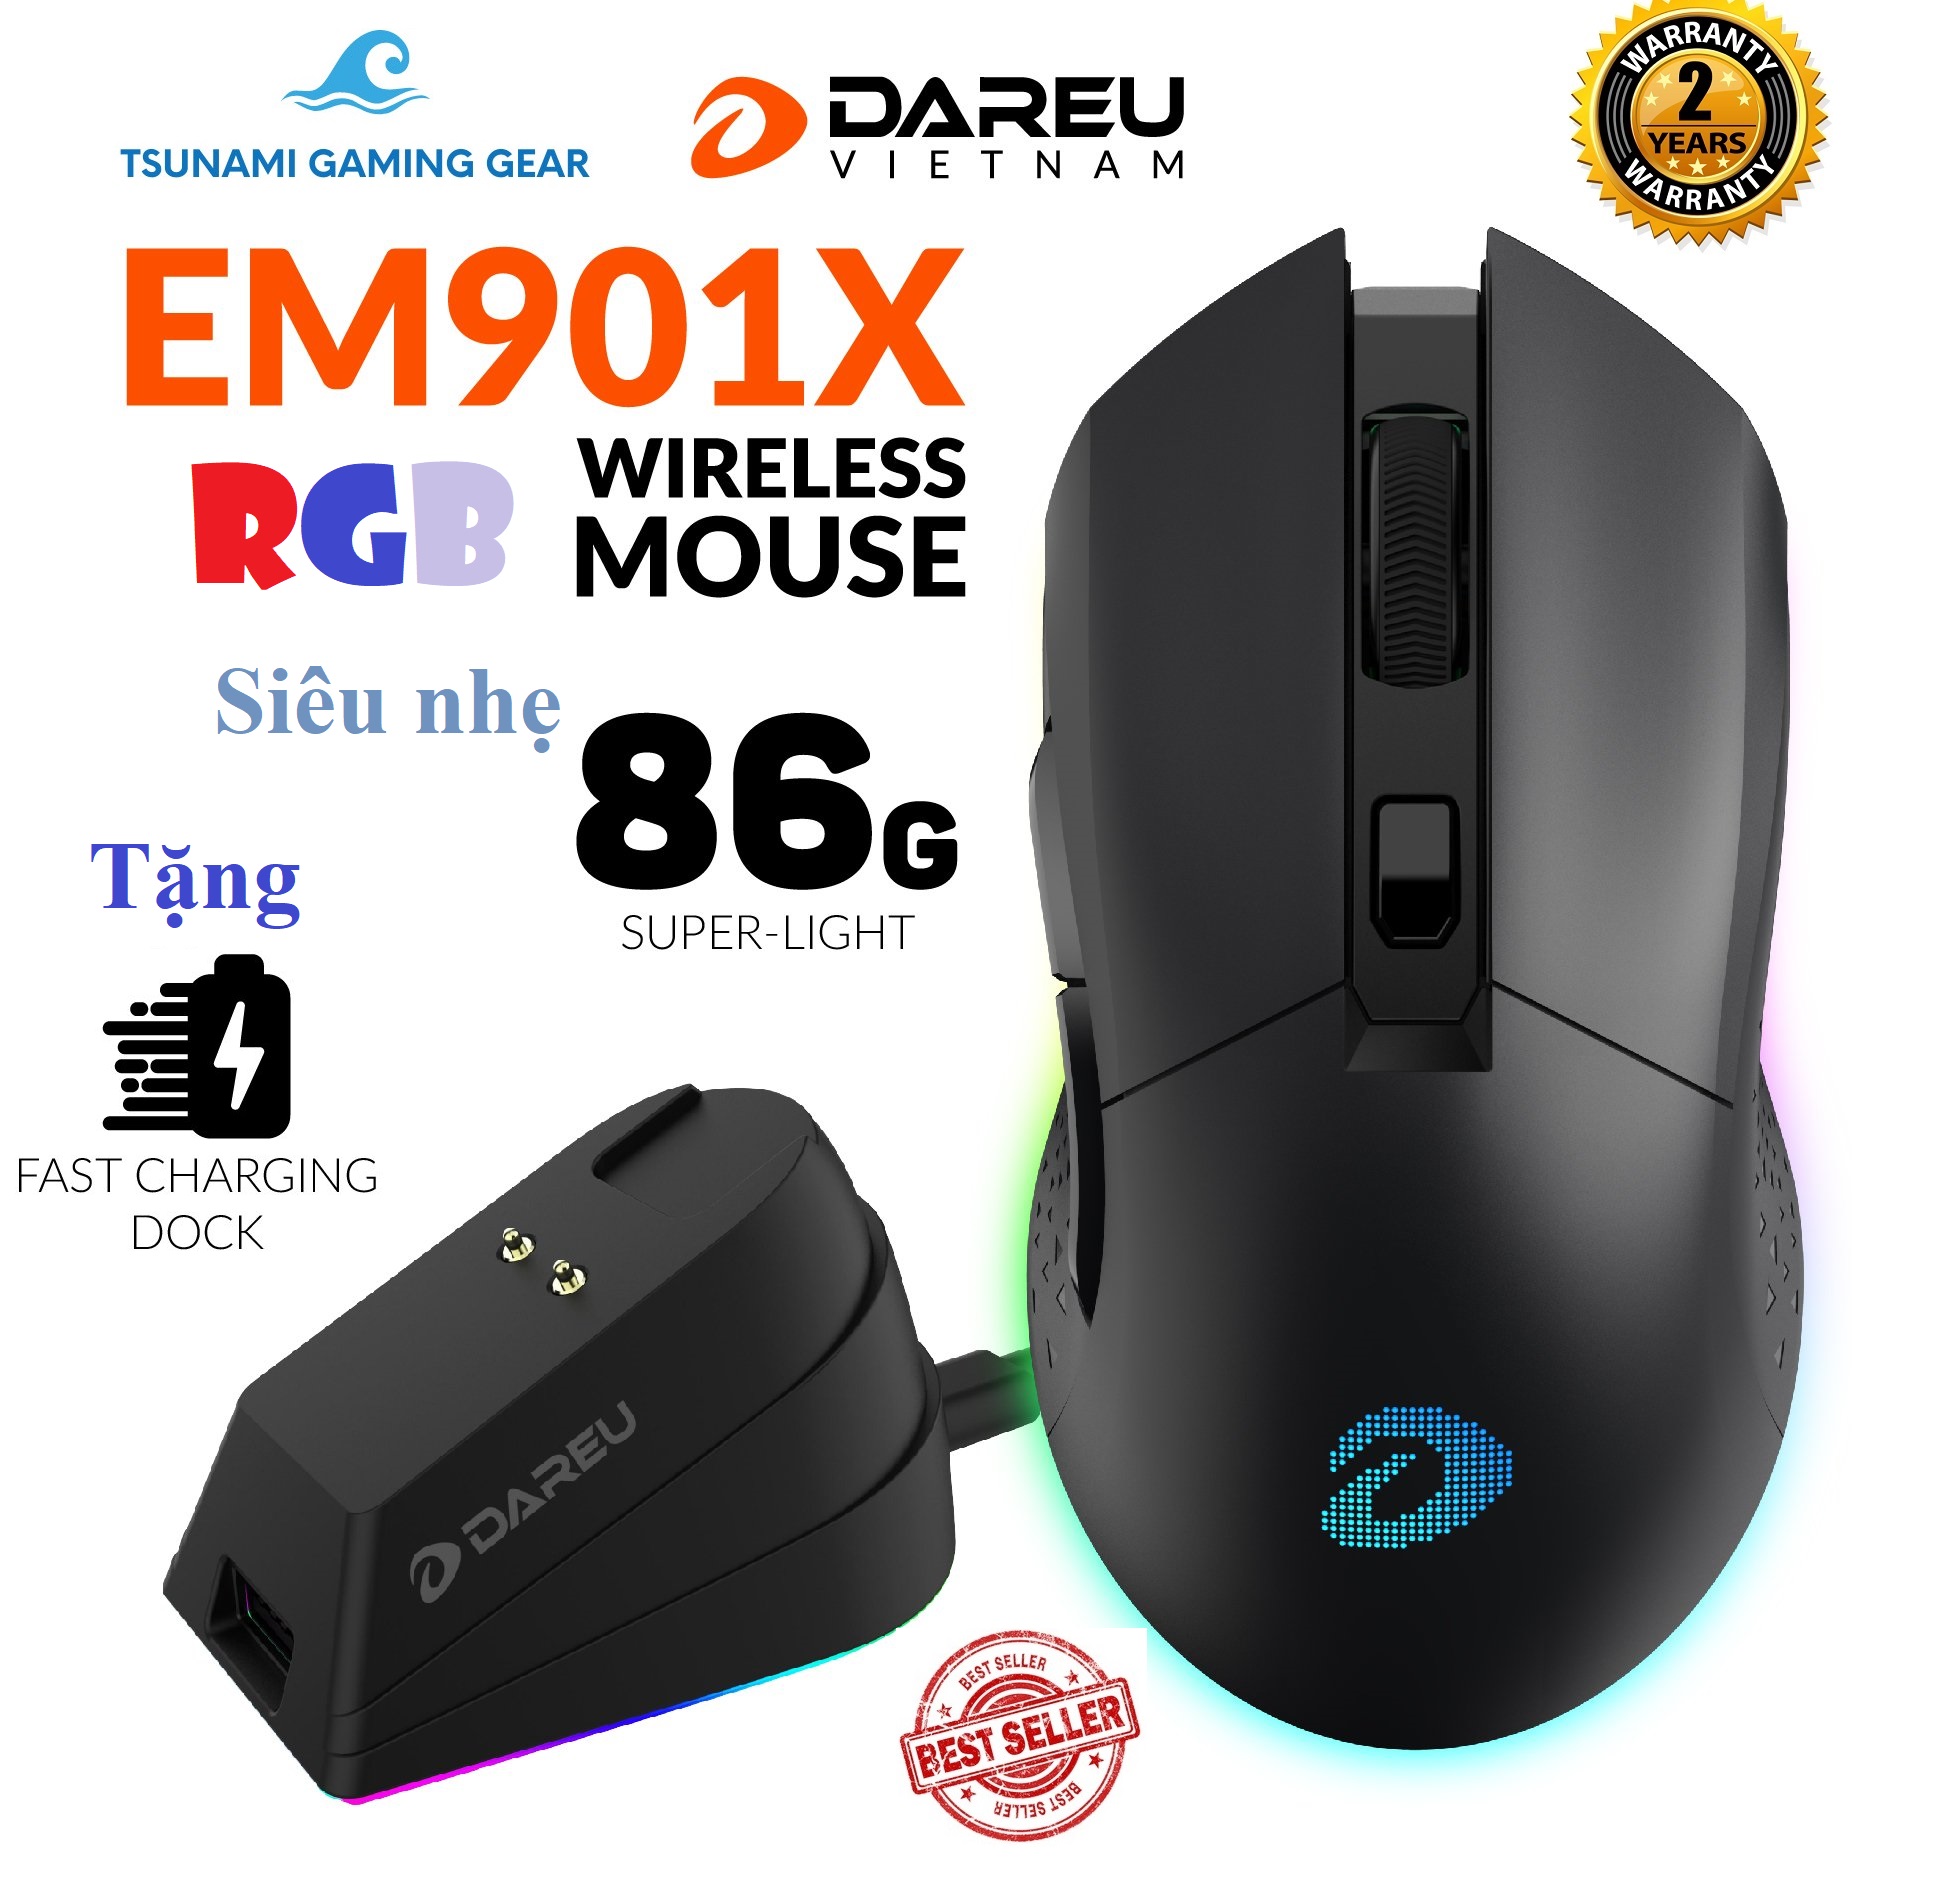 Chuột không dây Gaming DAREU EM901X RGB - SUPERLIGHT siêu nhẹ